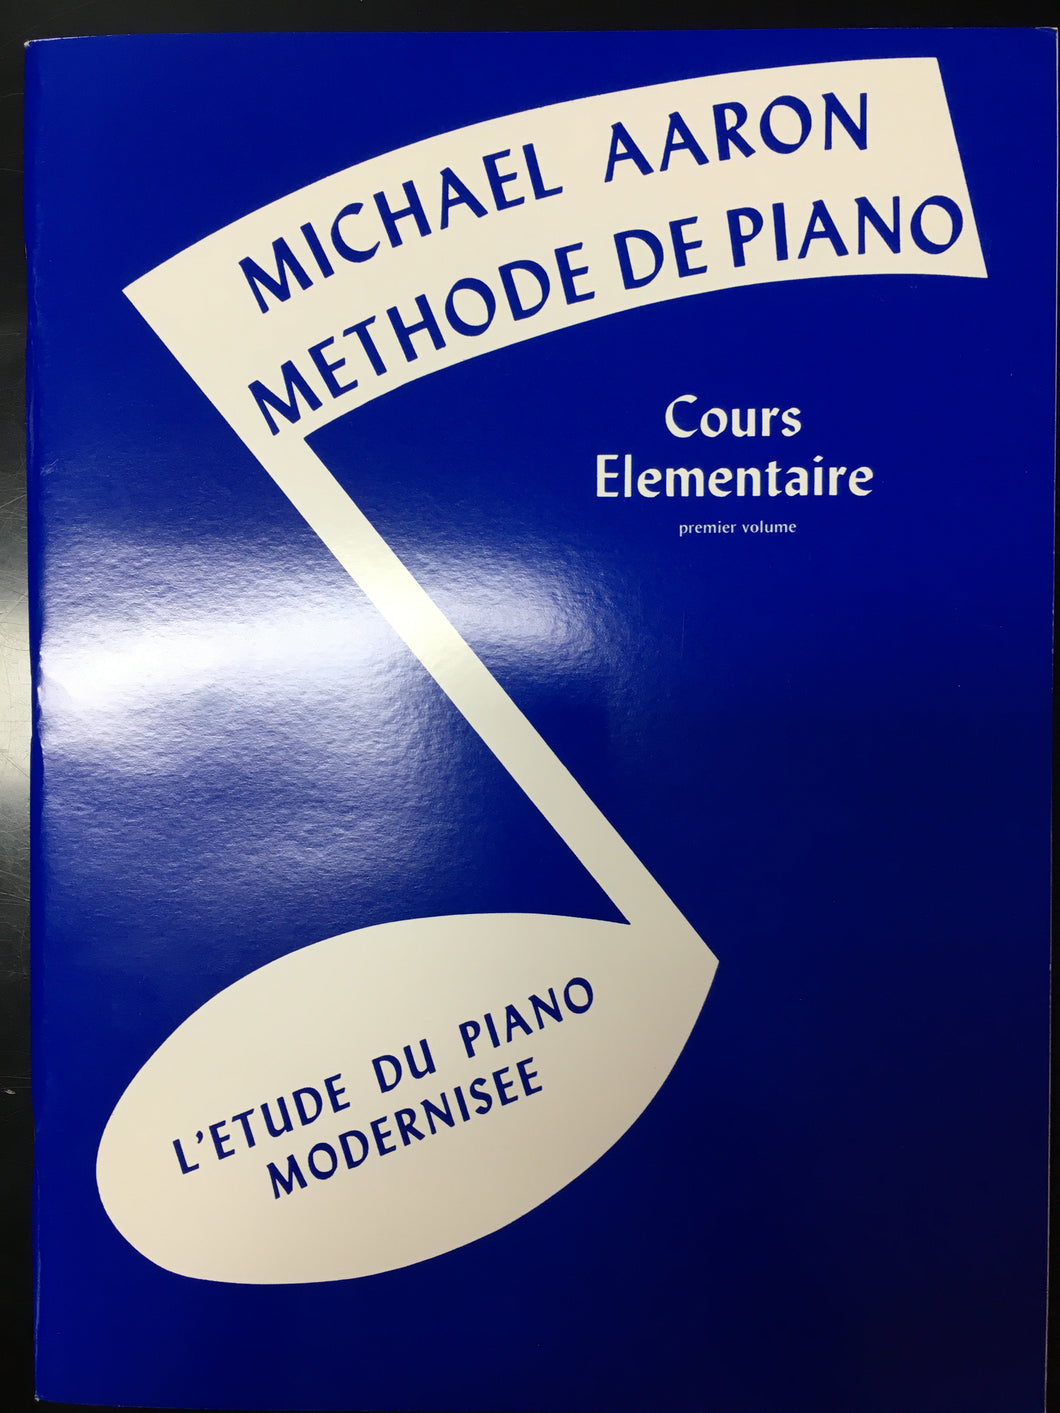 Michael Aaron - Methode de Piano Cours Elementaire Livre 1